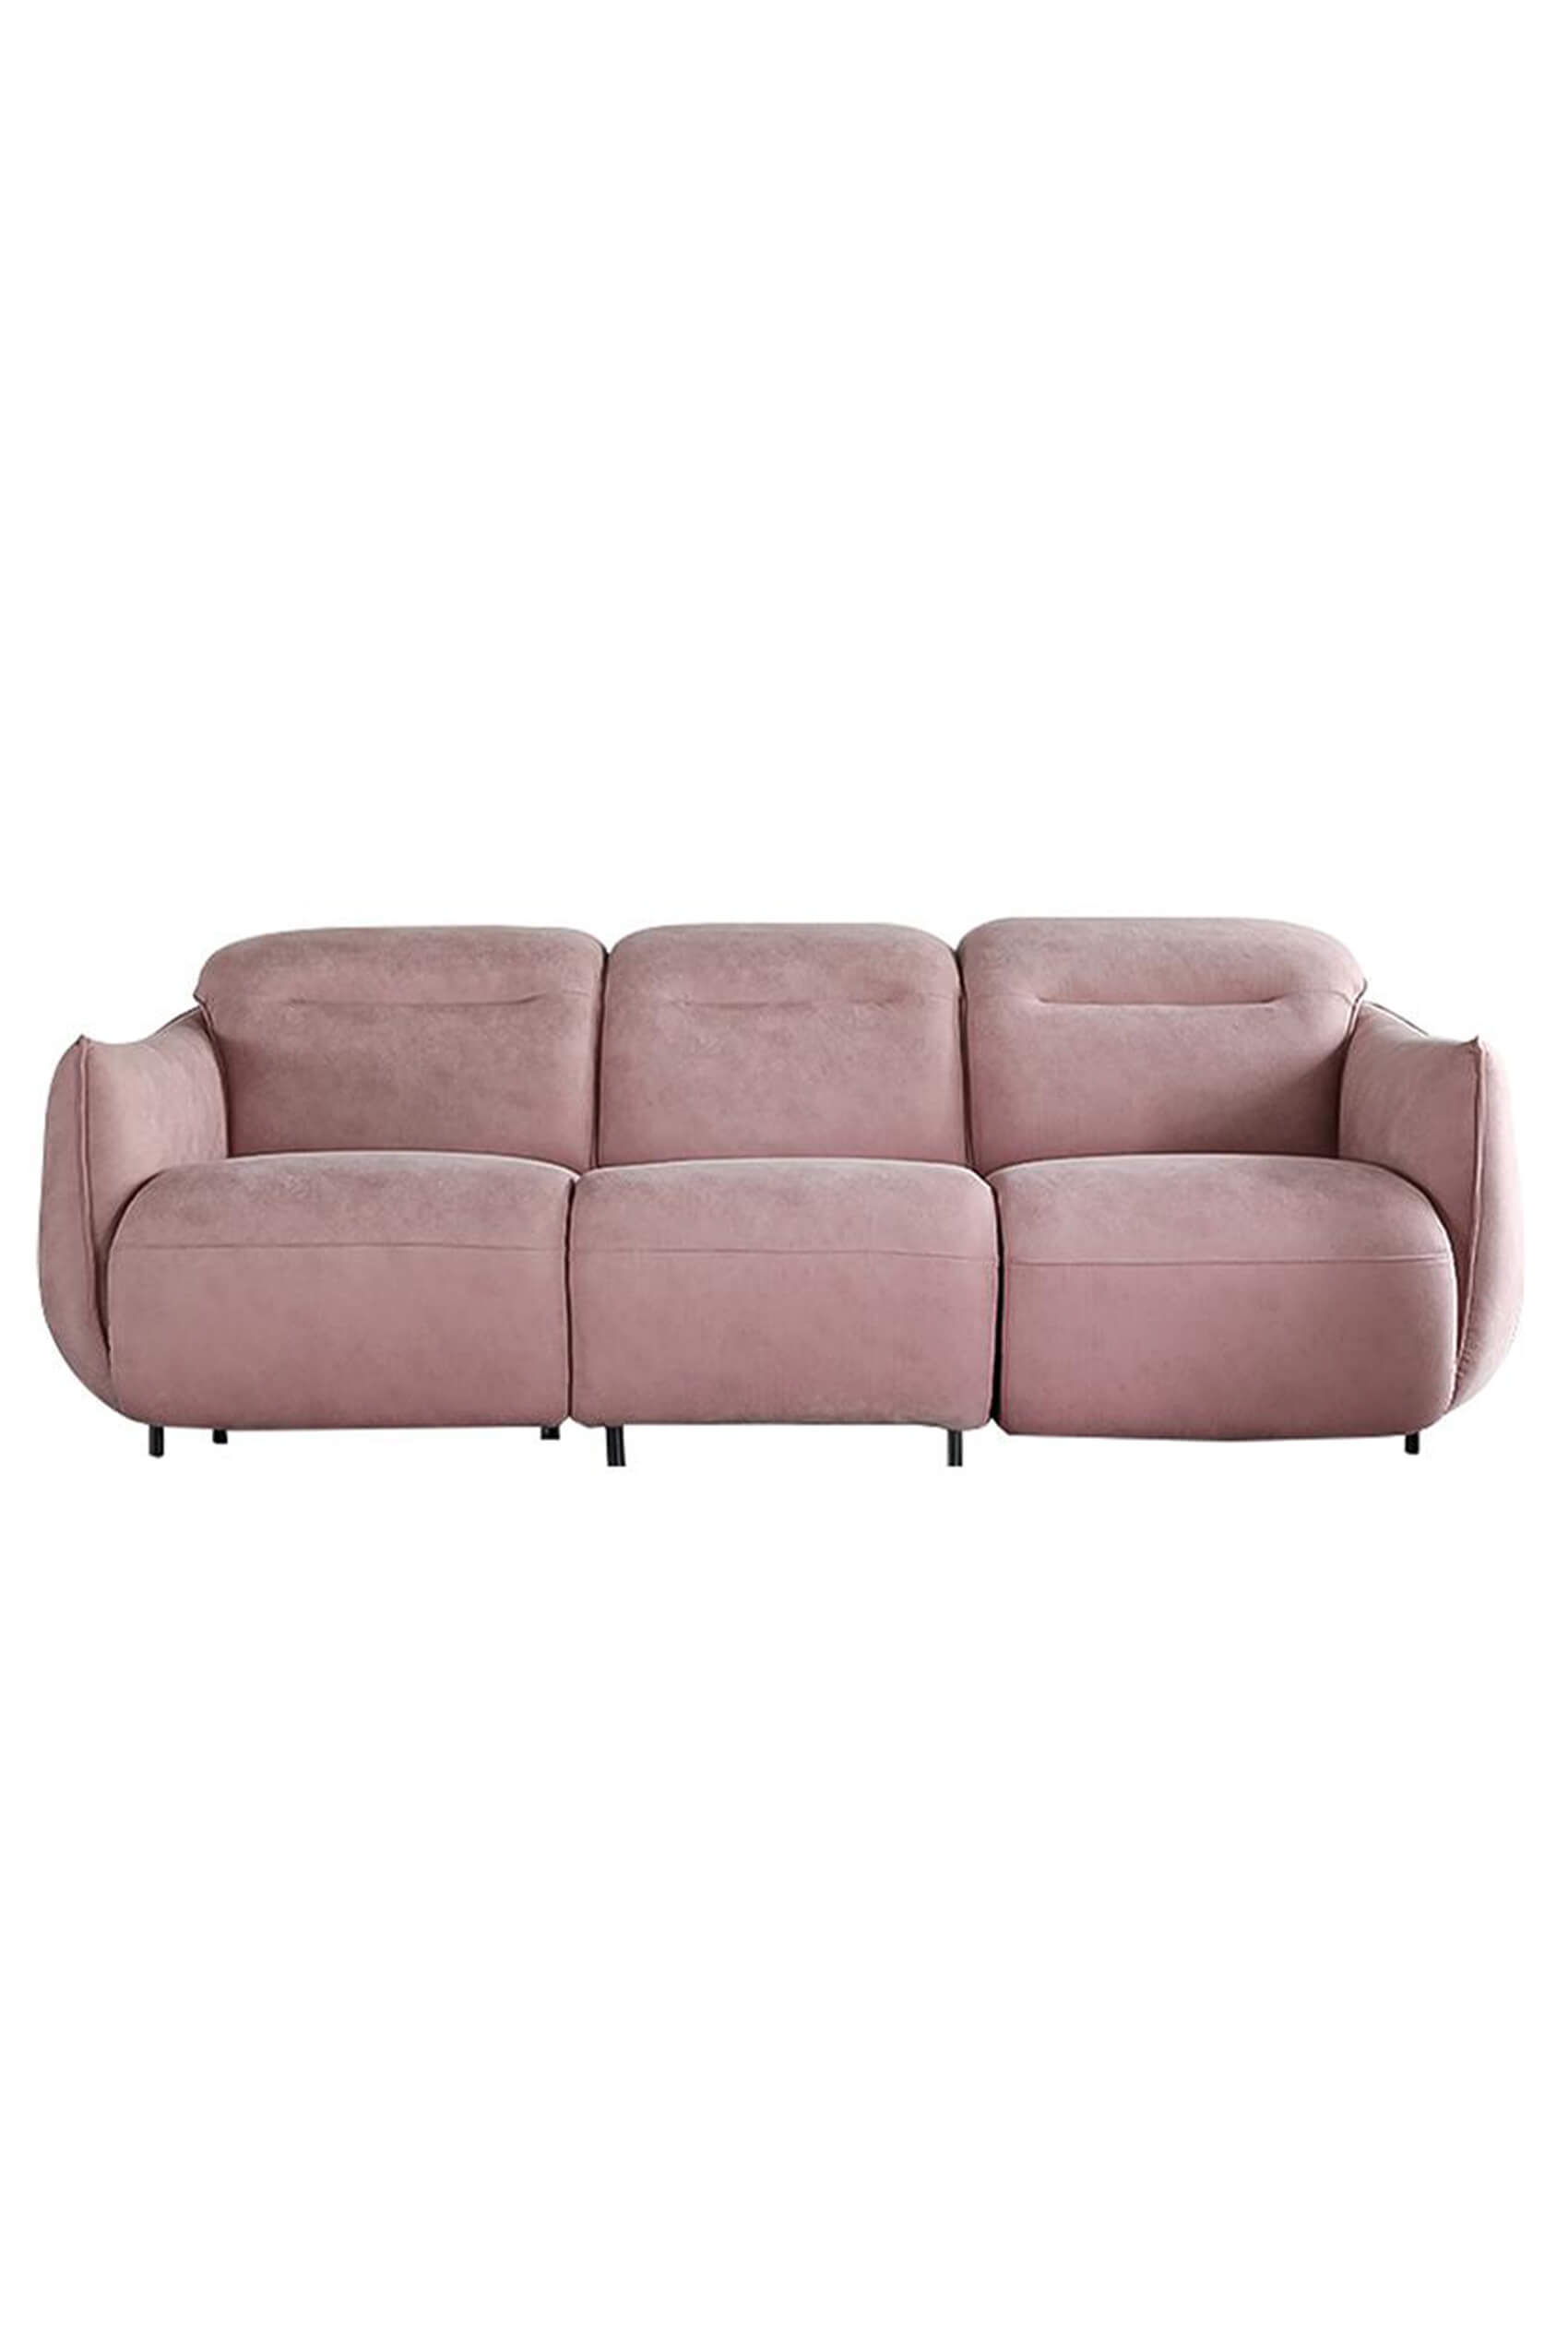 Briona High Tech Fabric Sofa